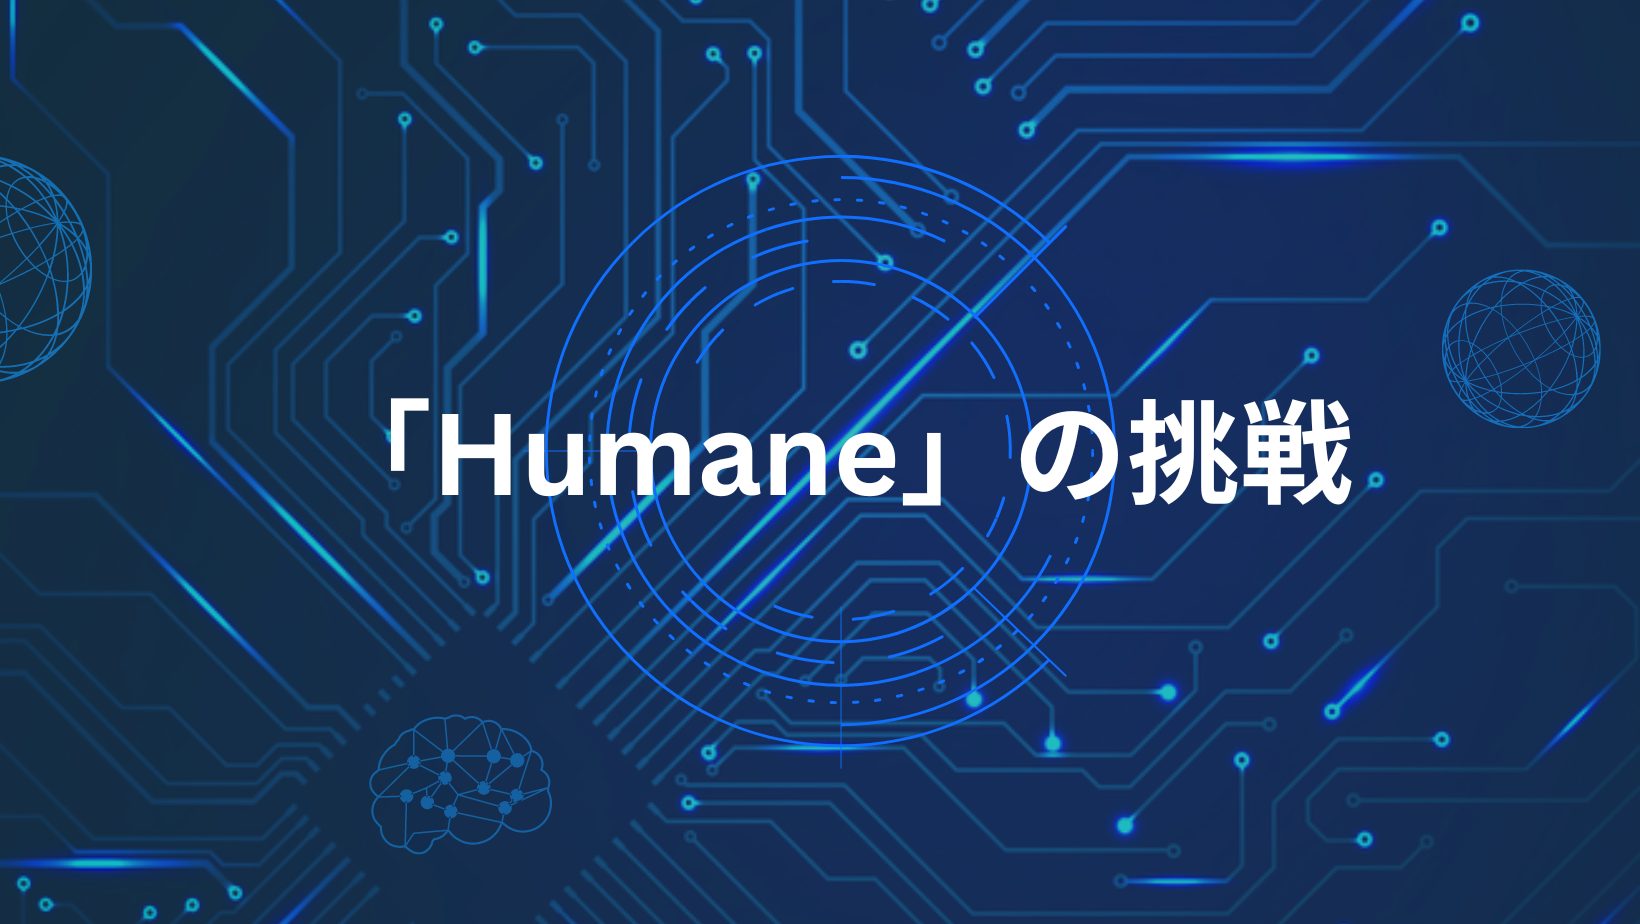 スマホを超越する未来デバイス「Humane」の挑戦